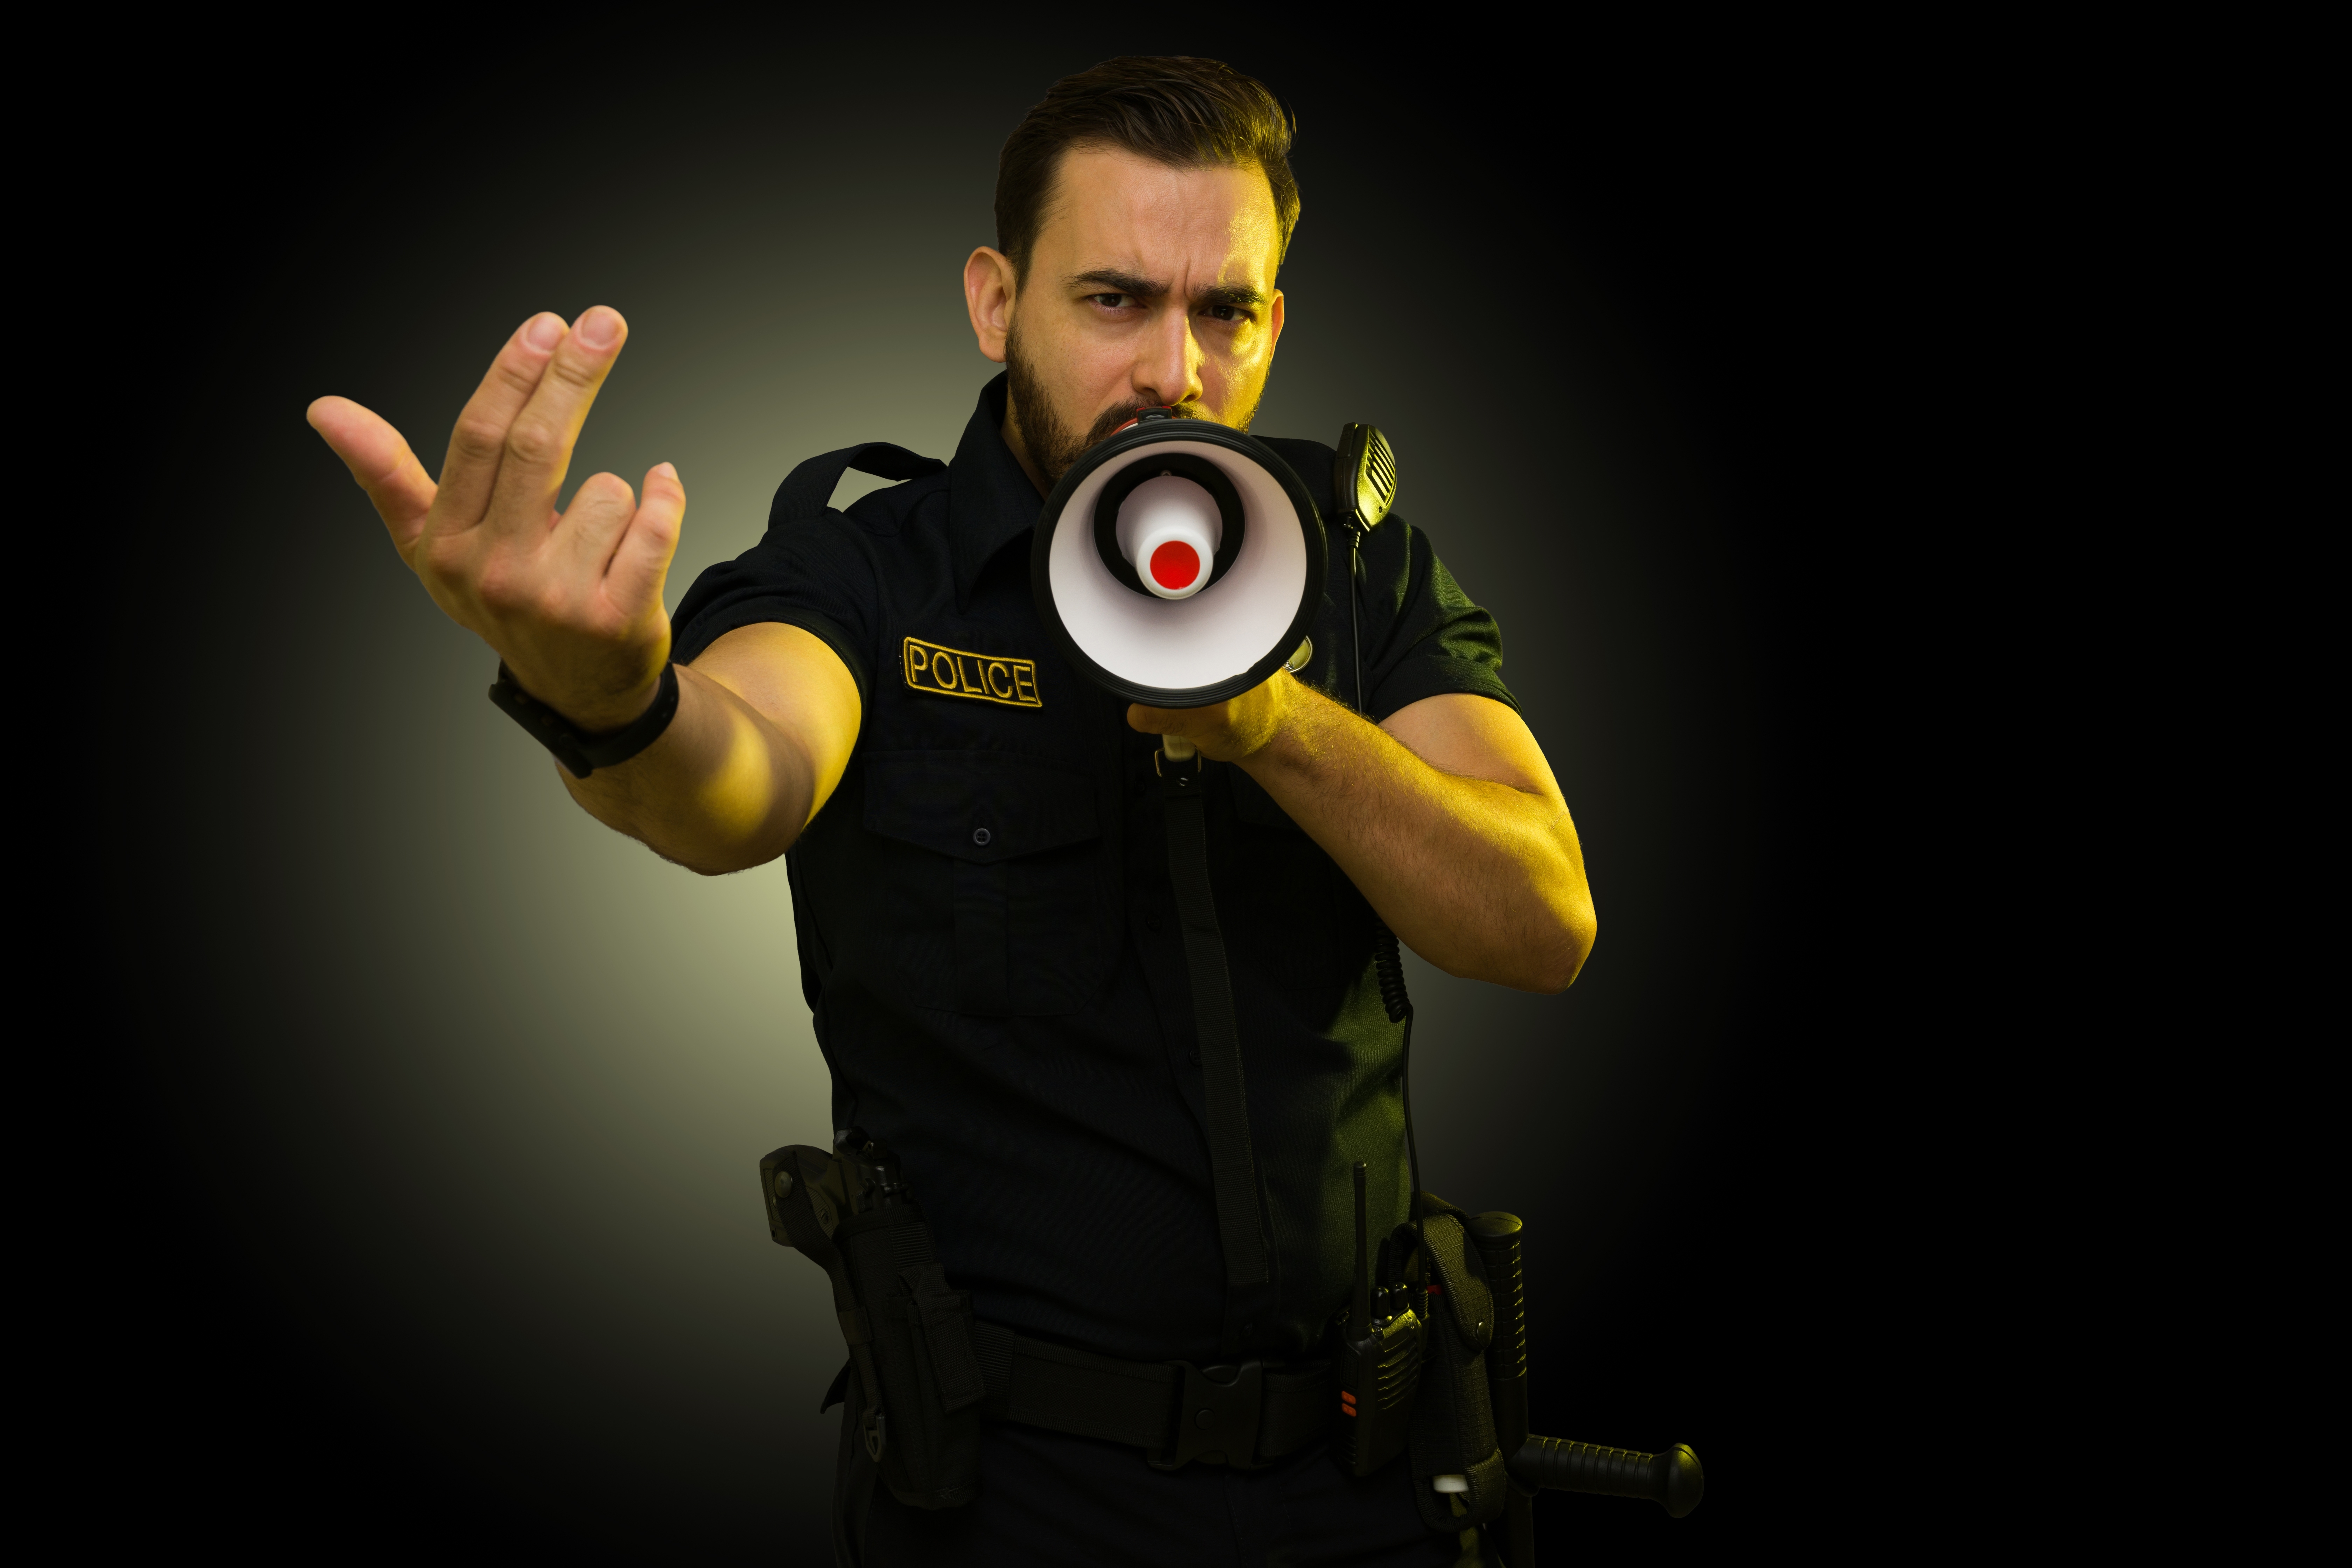 Officer | Source: Shutterstock